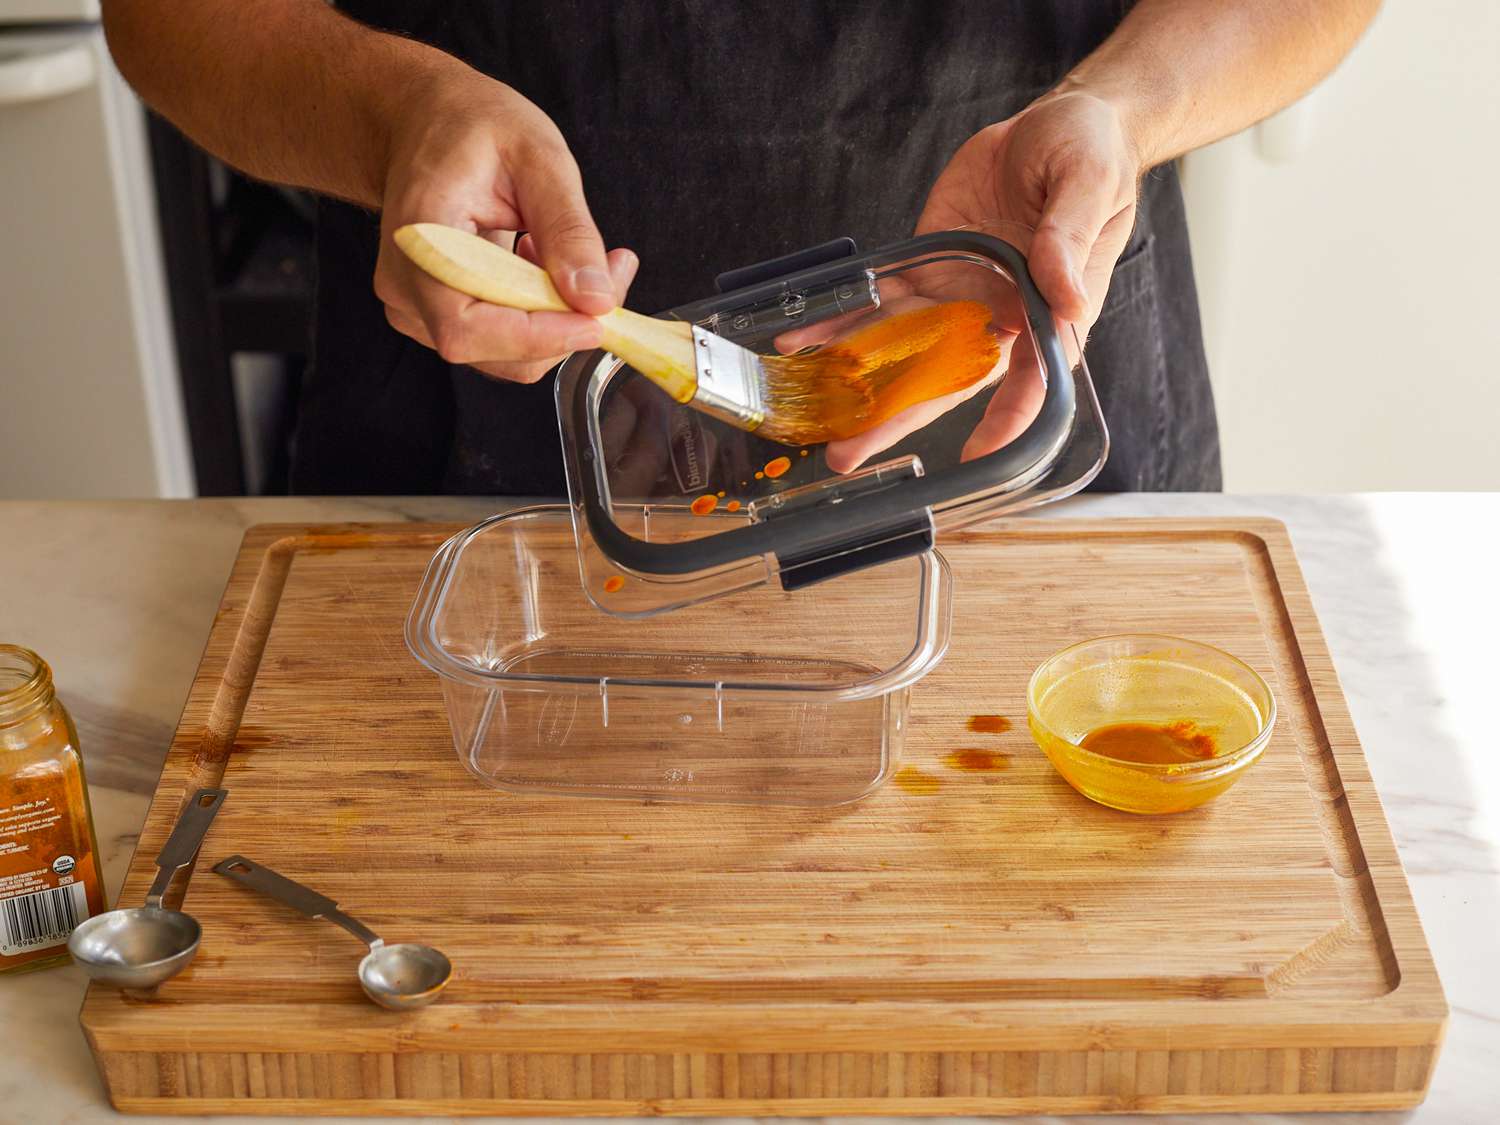 一只手用糕点刷将油和姜黄的混合物涂在食品储存容器的盖子上